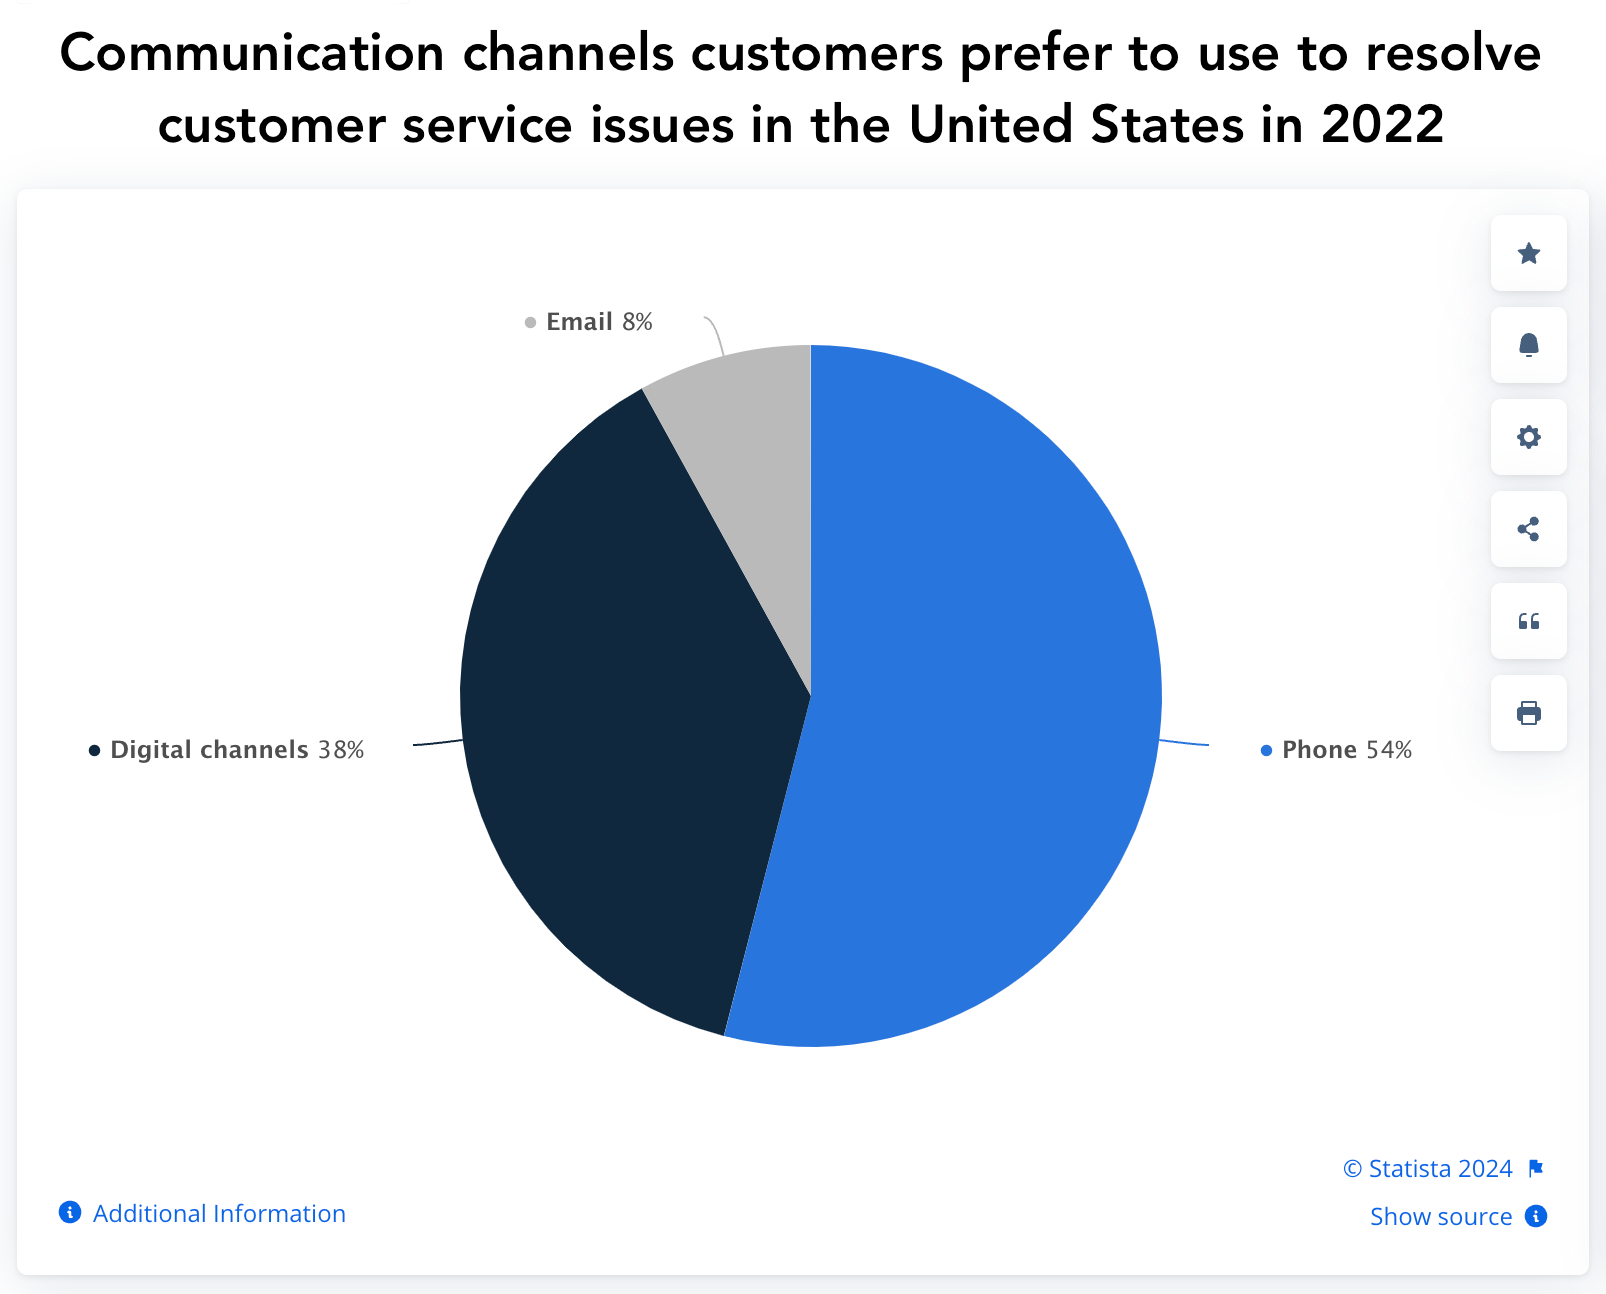 Wykres kołowy Statista przedstawiający kanały komunikacji, z których klienci wolą korzystać w celu rozwiązywania problemów w Stanach Zjednoczonych w 2022 r. – telefon, kanały cyfrowe, e-mail